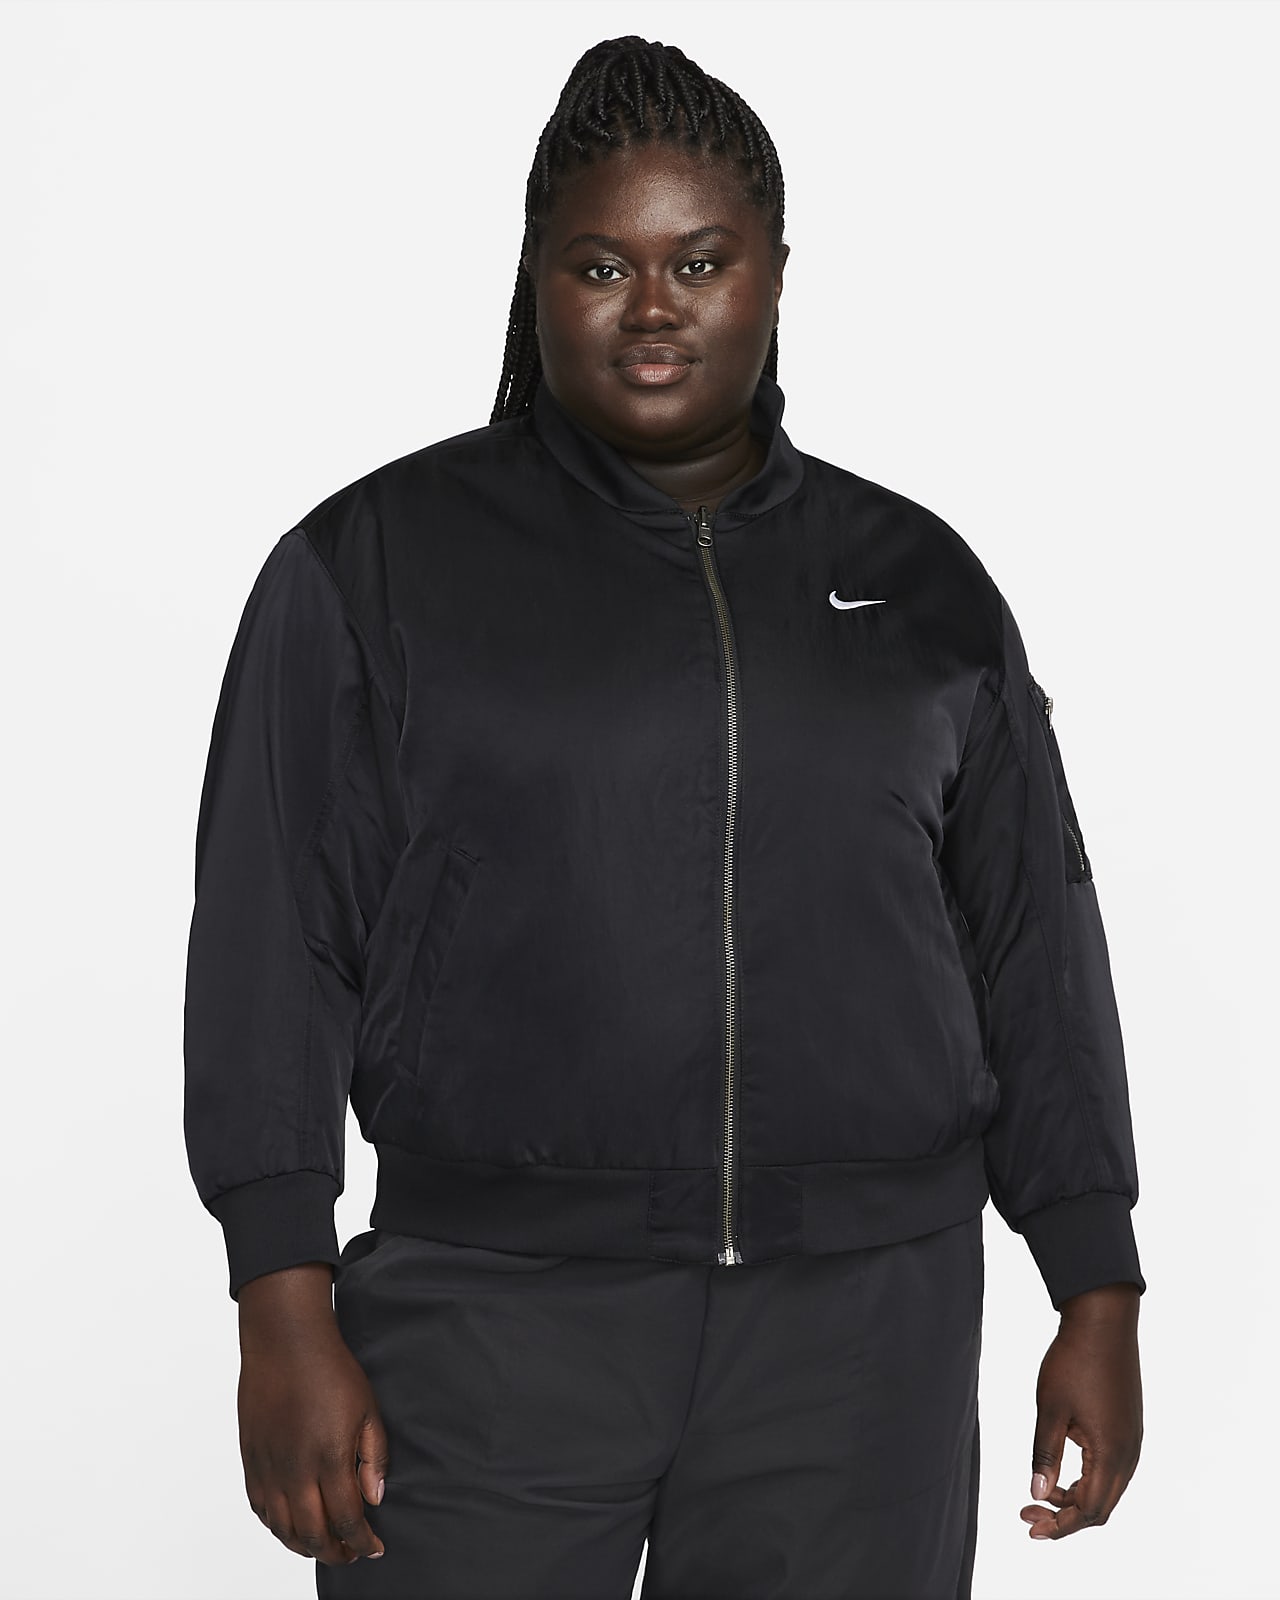 Veste aviateur universitaire réversible Nike Sportswear pour femme (grande taille)